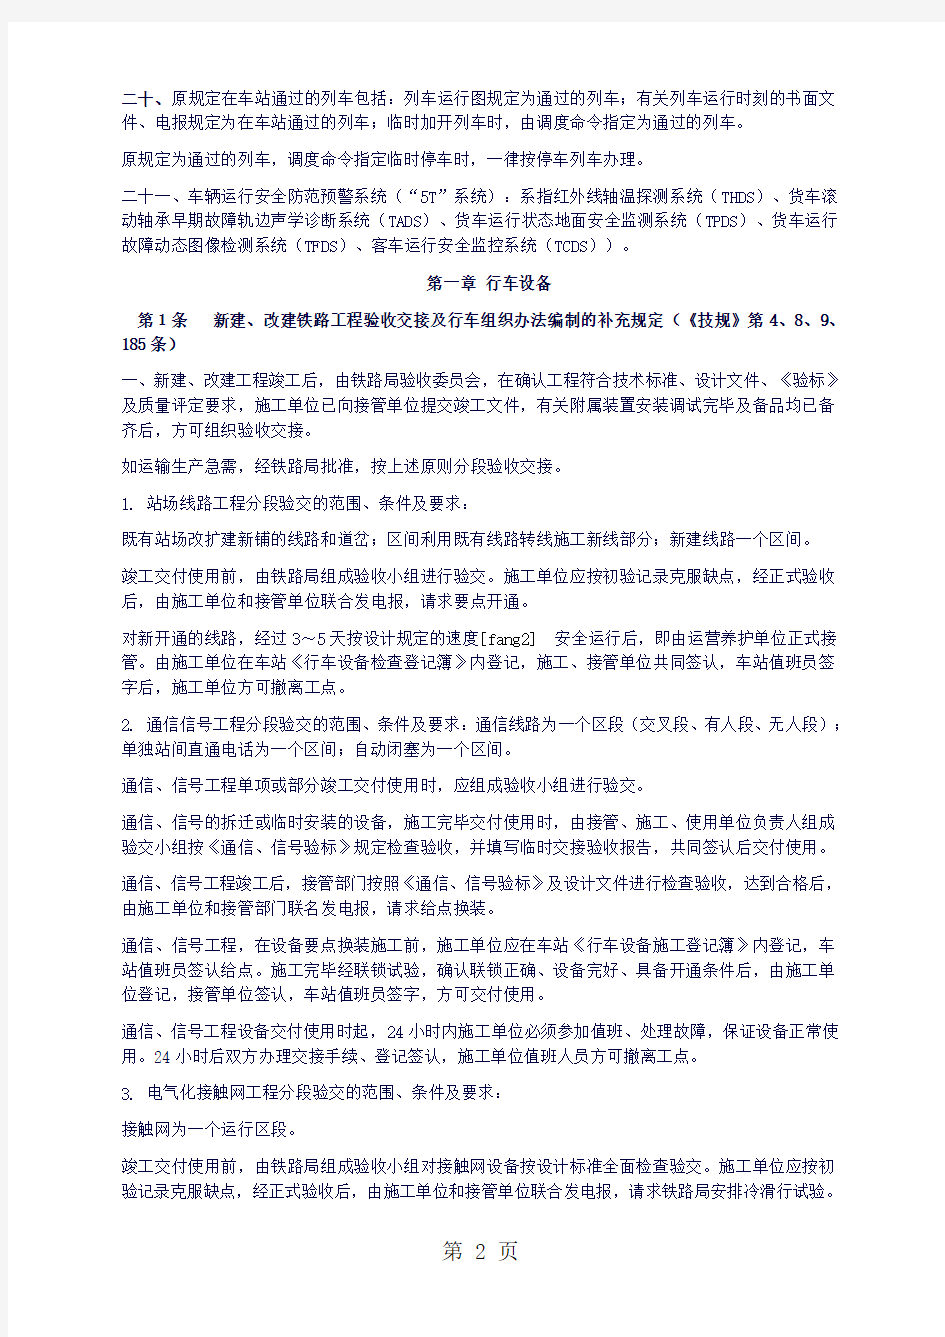 武汉铁路局《行车组织规则》2019版共93页文档